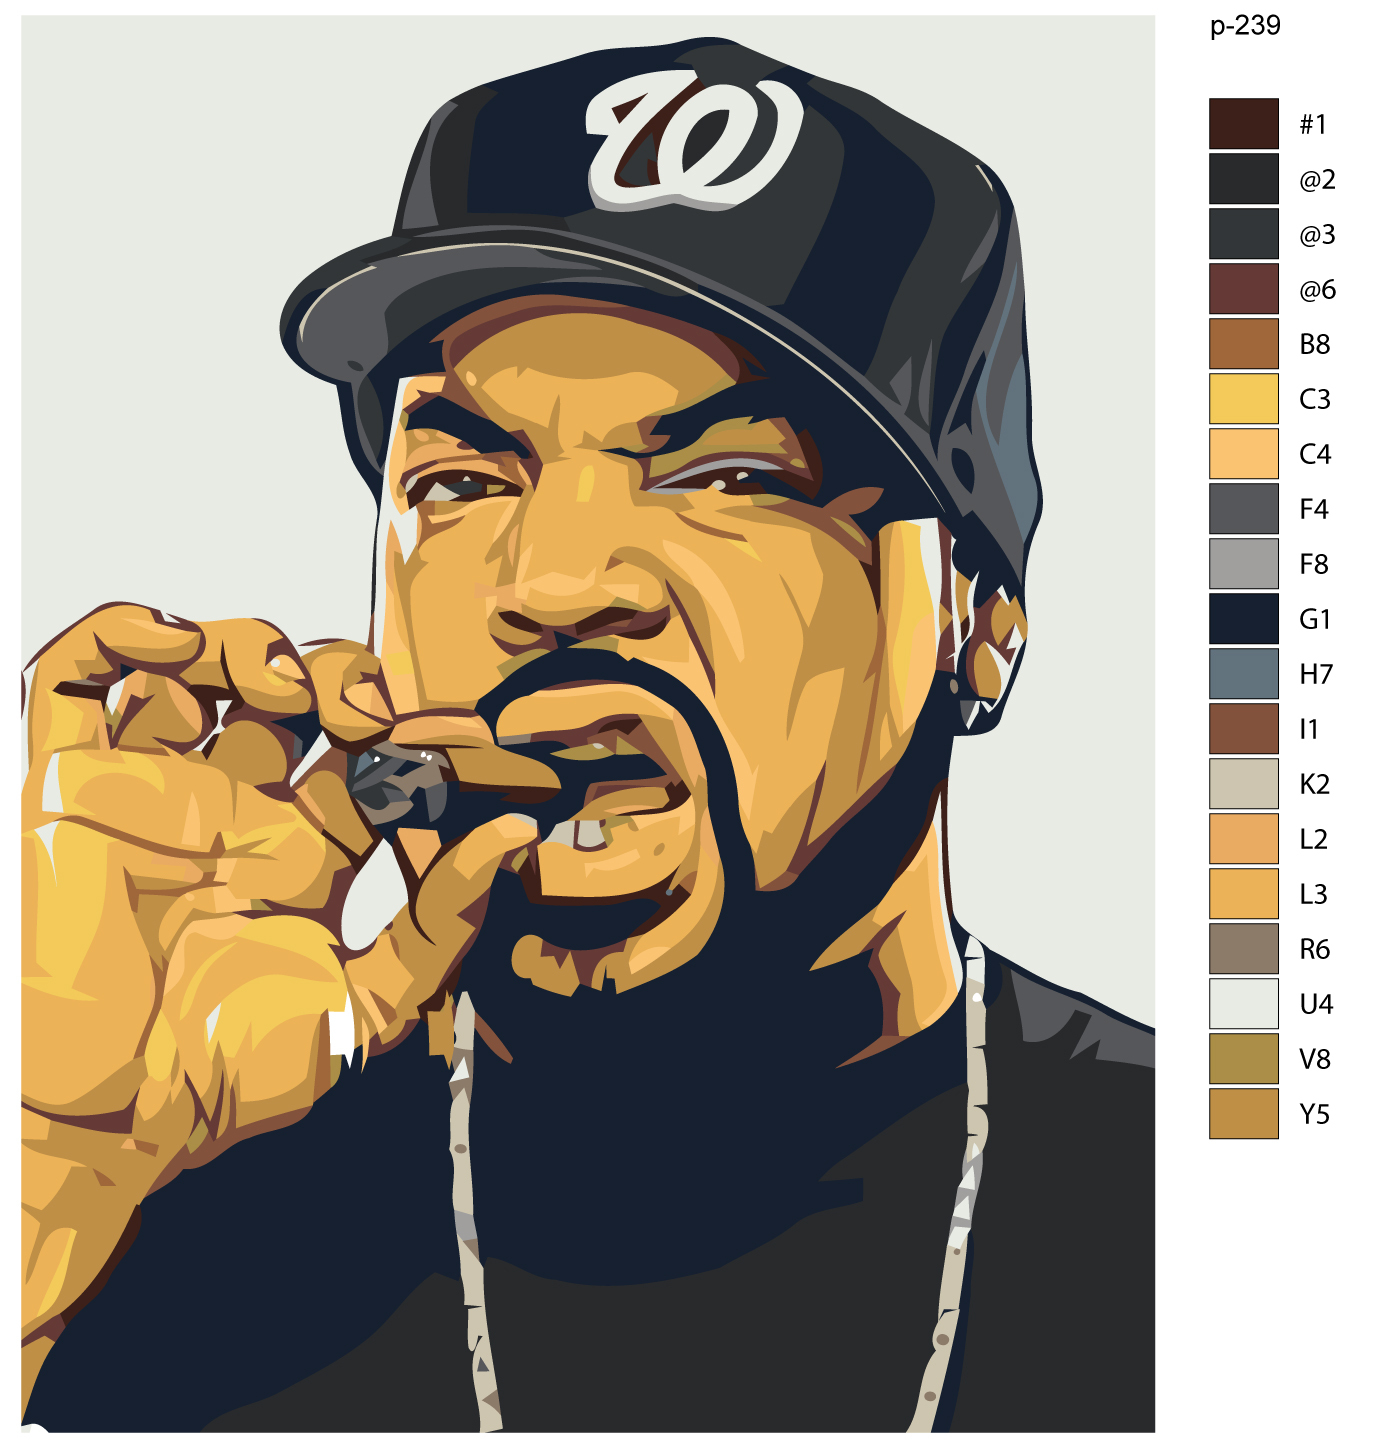 Cube gangsta. Картина по номерам реперы. Фигурка Ice Cube. Айс Кьюб ну что приехали. Дверь Кьюб Слате арт.